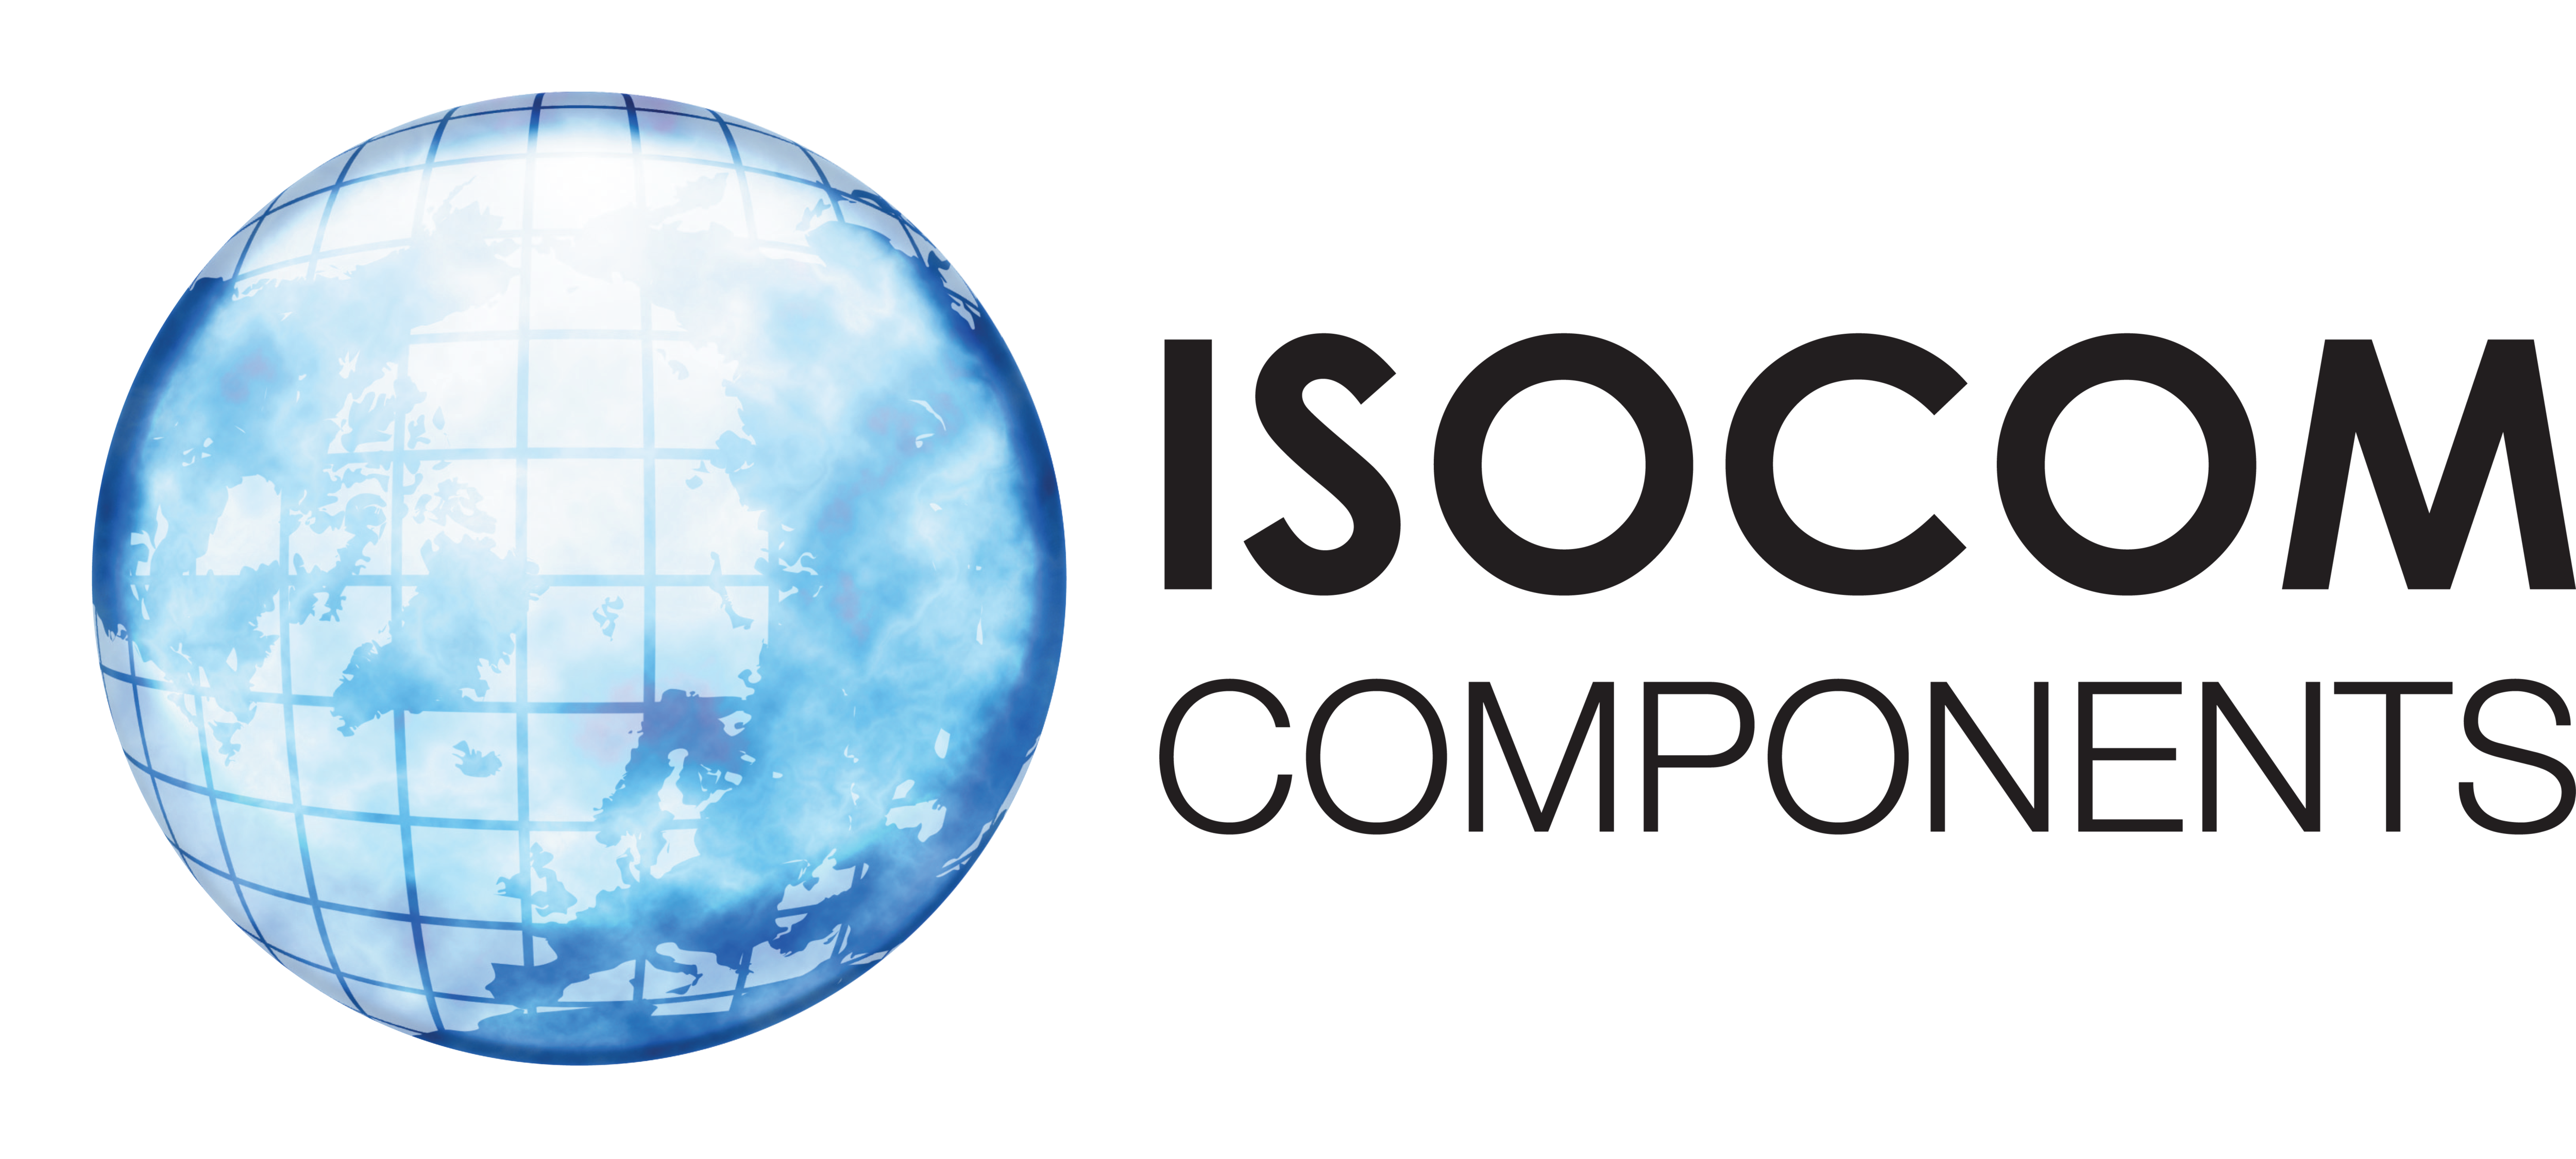 Isocom Components LOGO